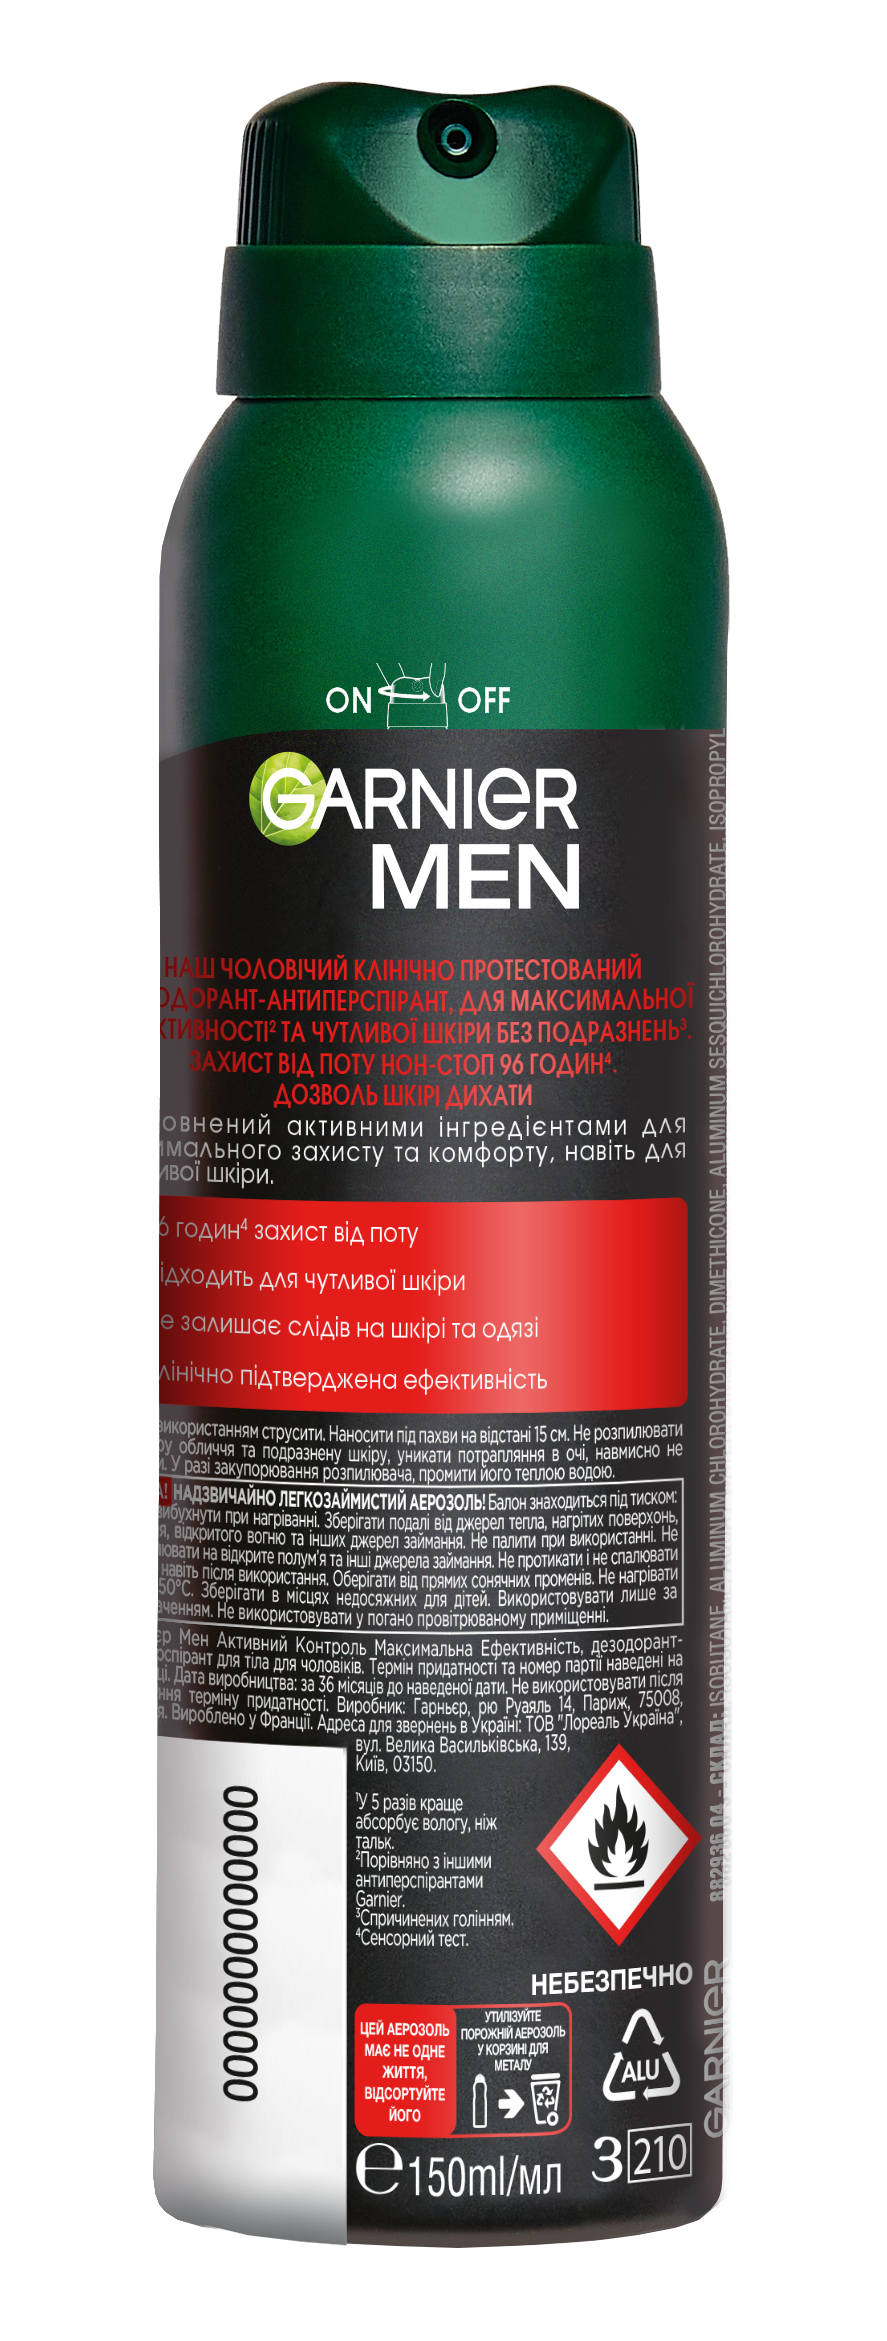 Дезодорант-антиперспирант Garnier Mineral Активный контроль и максимальная эффективность, спрей, 150 мл - фото 2